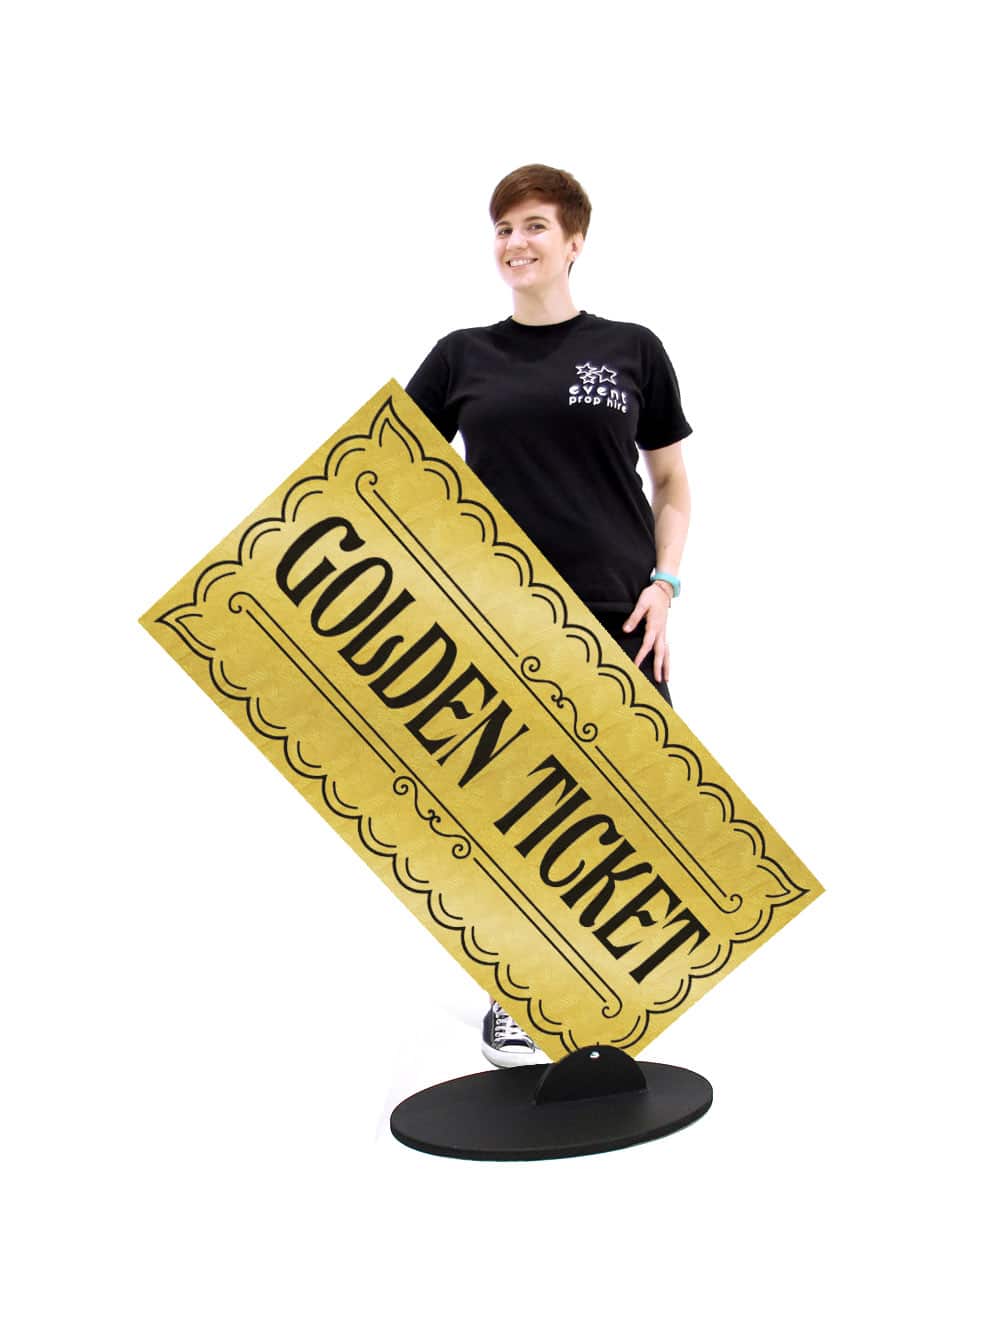 Giant Golden Ticket